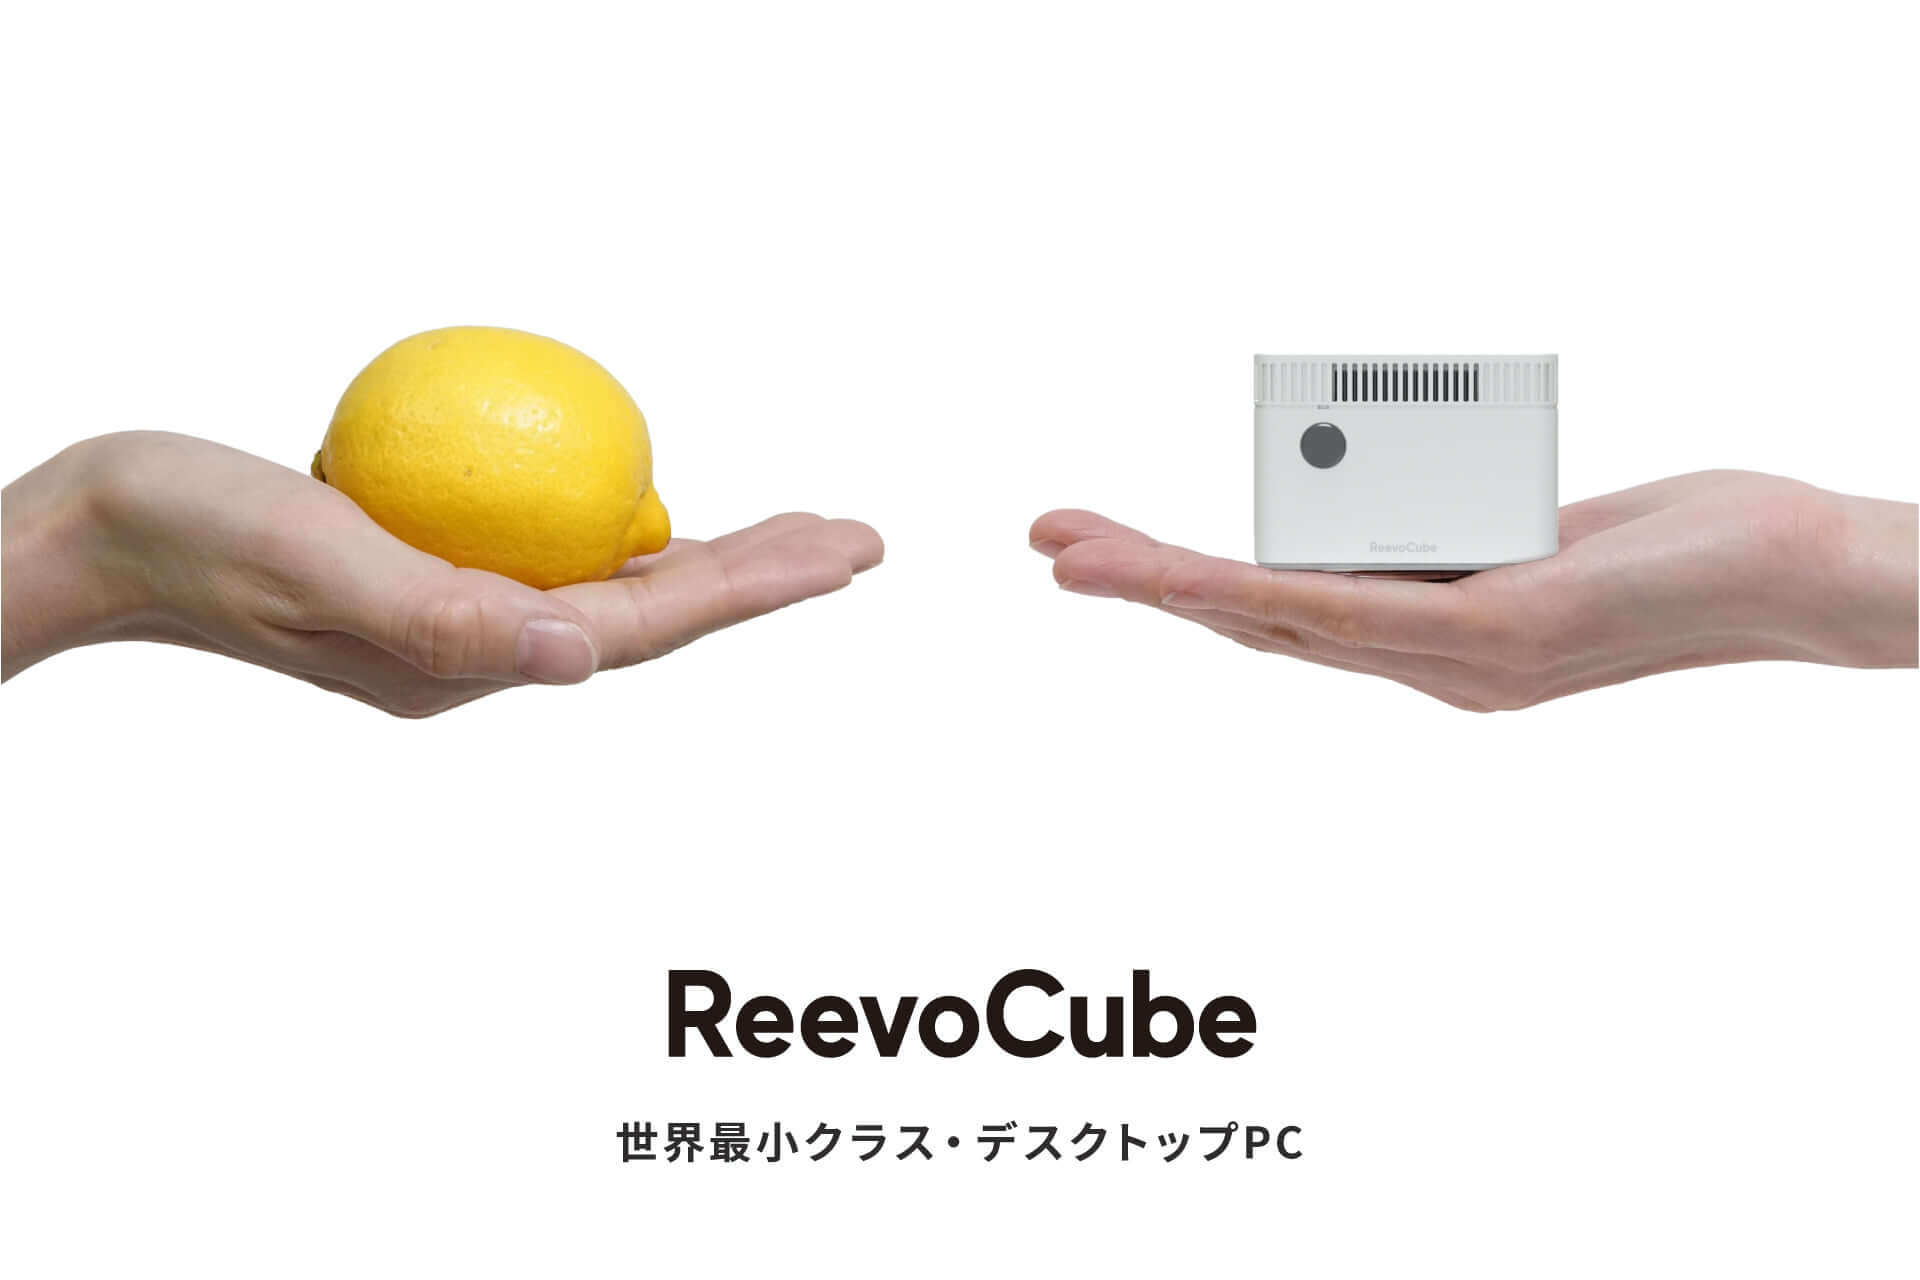 手のひらに乗るPC『ReevoCube』がCAMPFIREで発売｜Windows10 Pro搭載で2万円代 tech200528_reevocube_pc_3-1920x1280